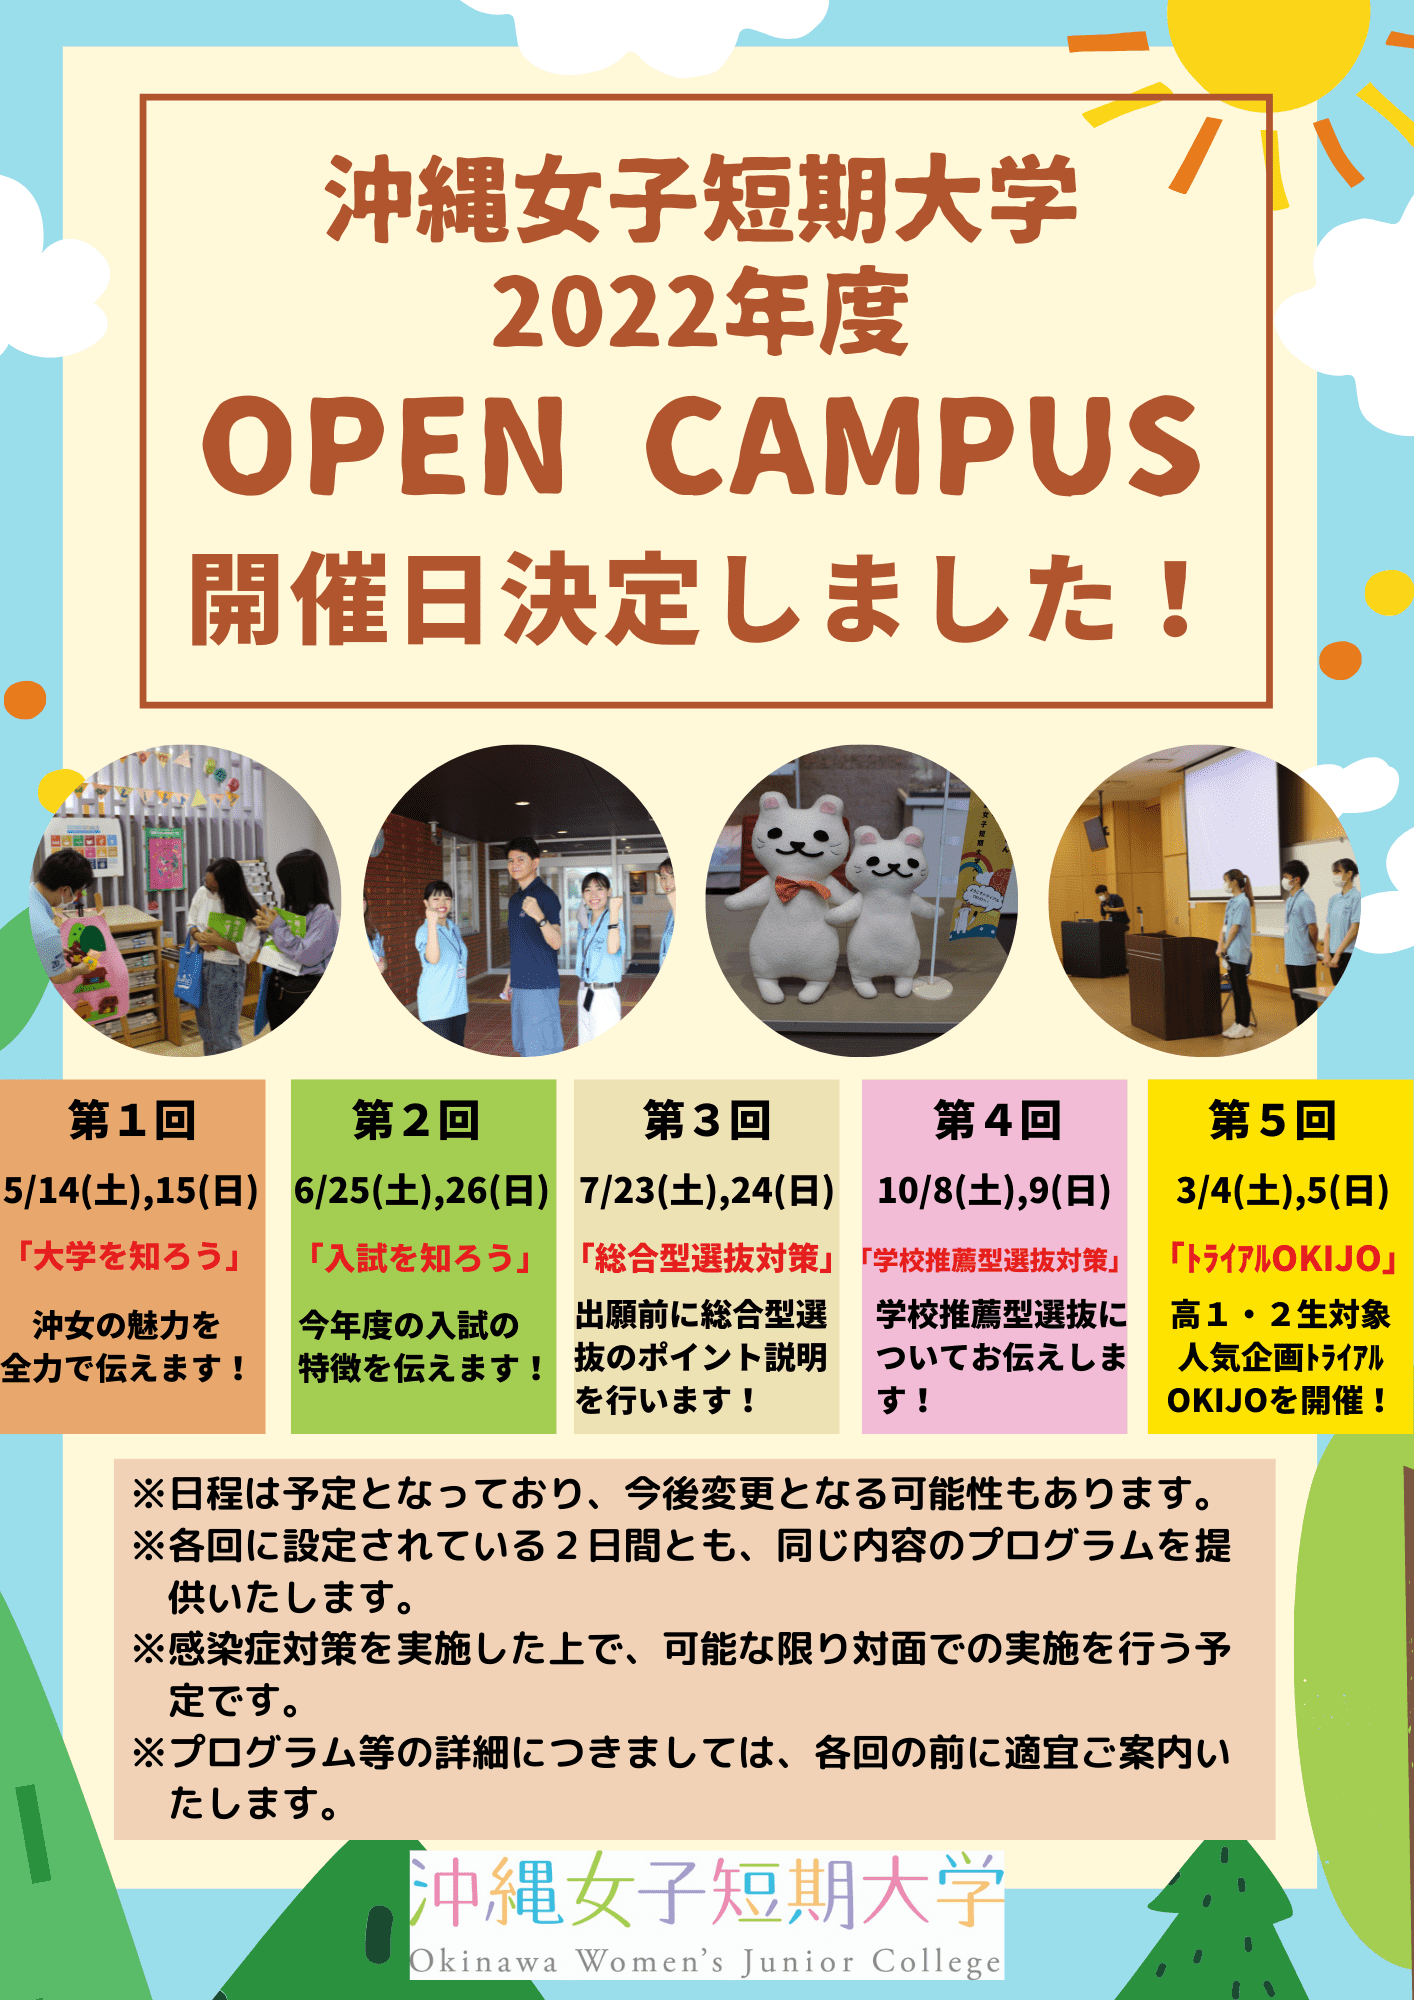 沖縄女子短期大学が2022年度に予定しているオープンキャンパス開催情報です。参加しよう！